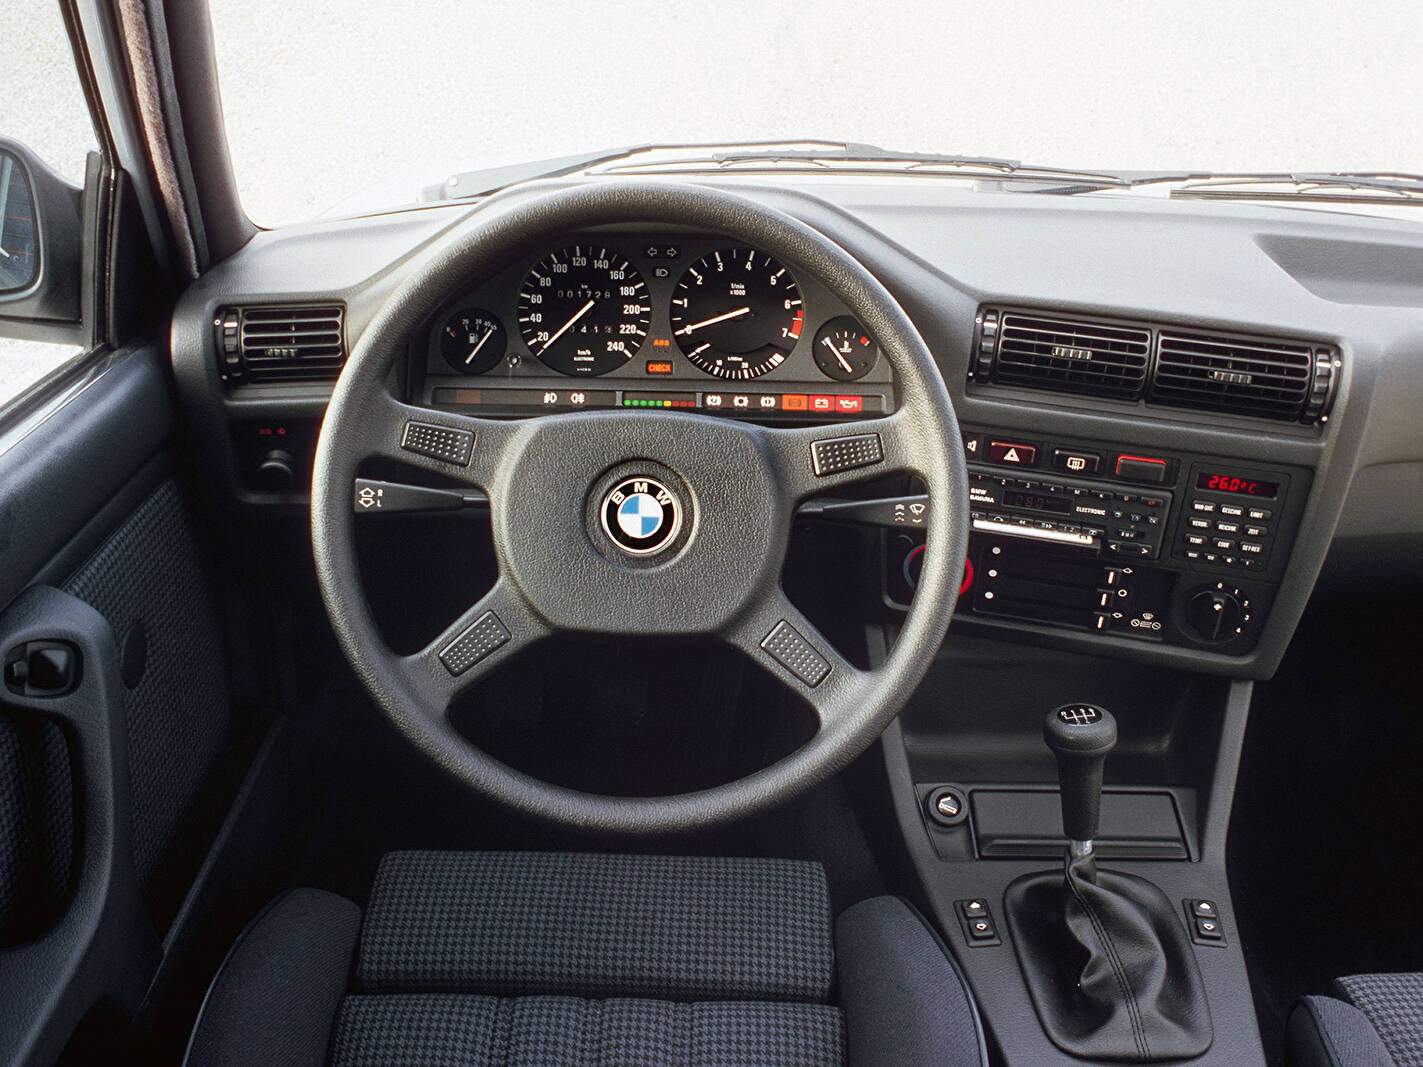 BMW 325i Cabriolet (E30) (1986-1991),  ajouté par fox58